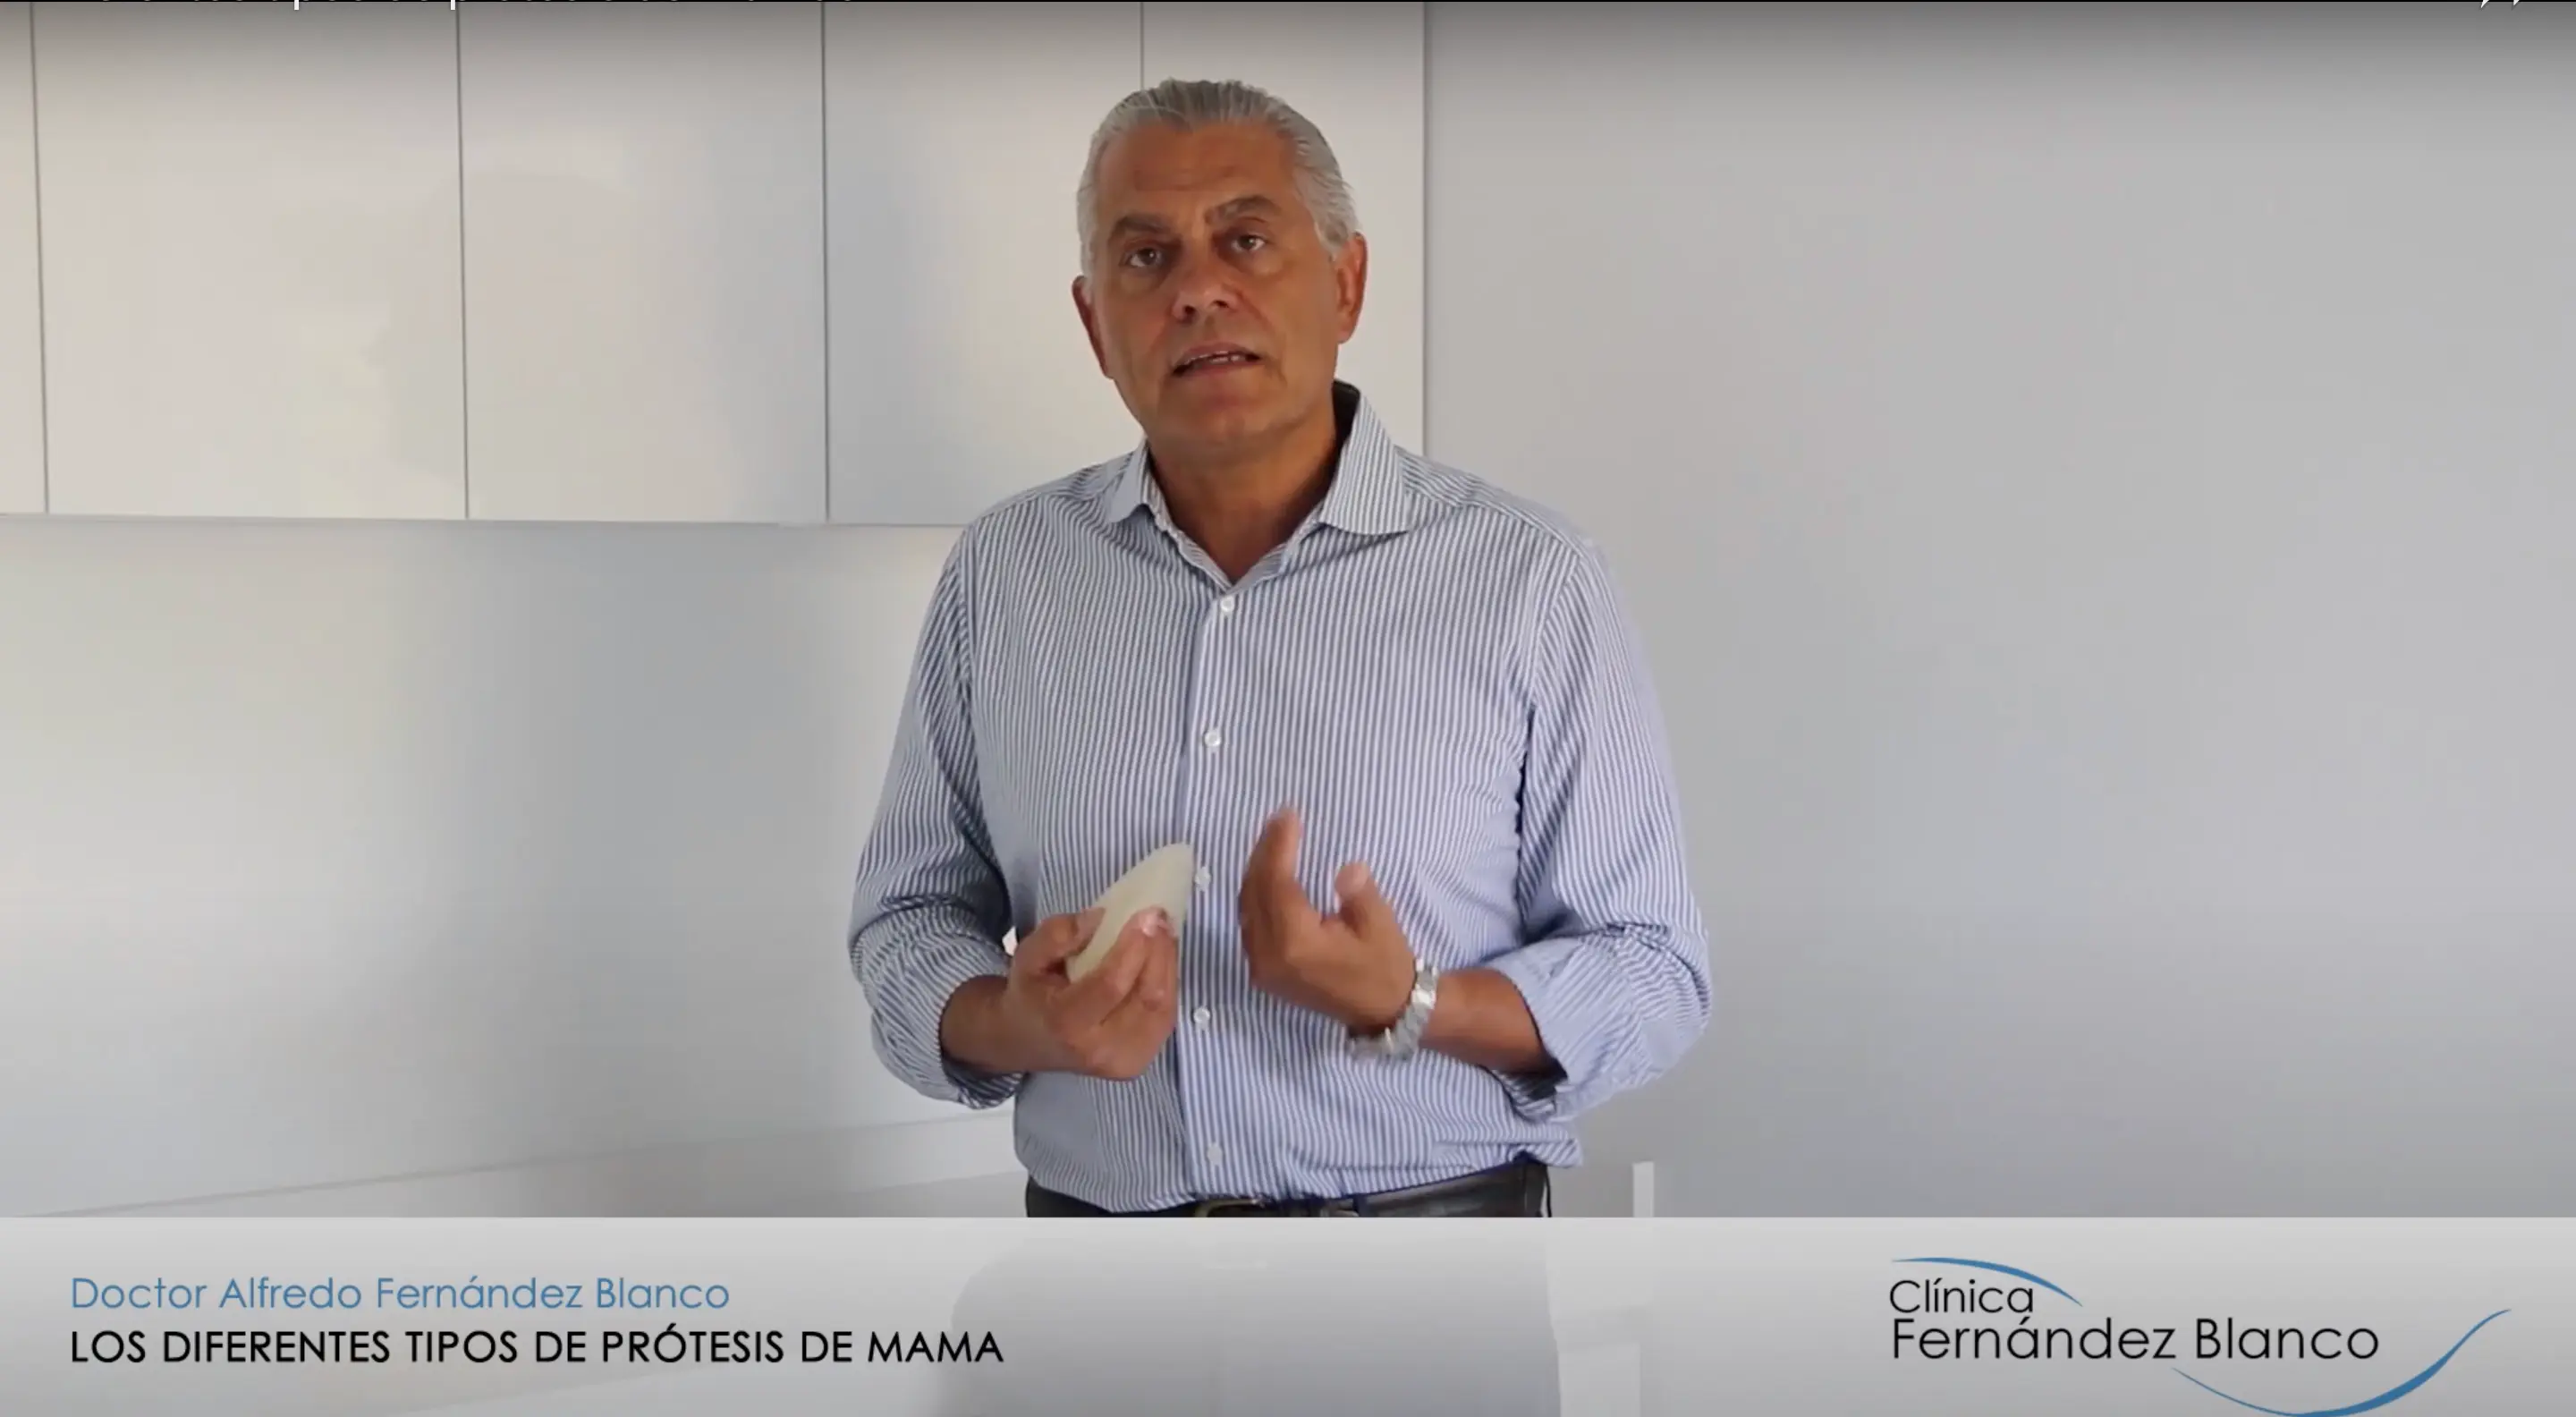 Videoblog del doctor Alfredo Fernández Blanco acerca de los diferentes tipos de prótesis de mama